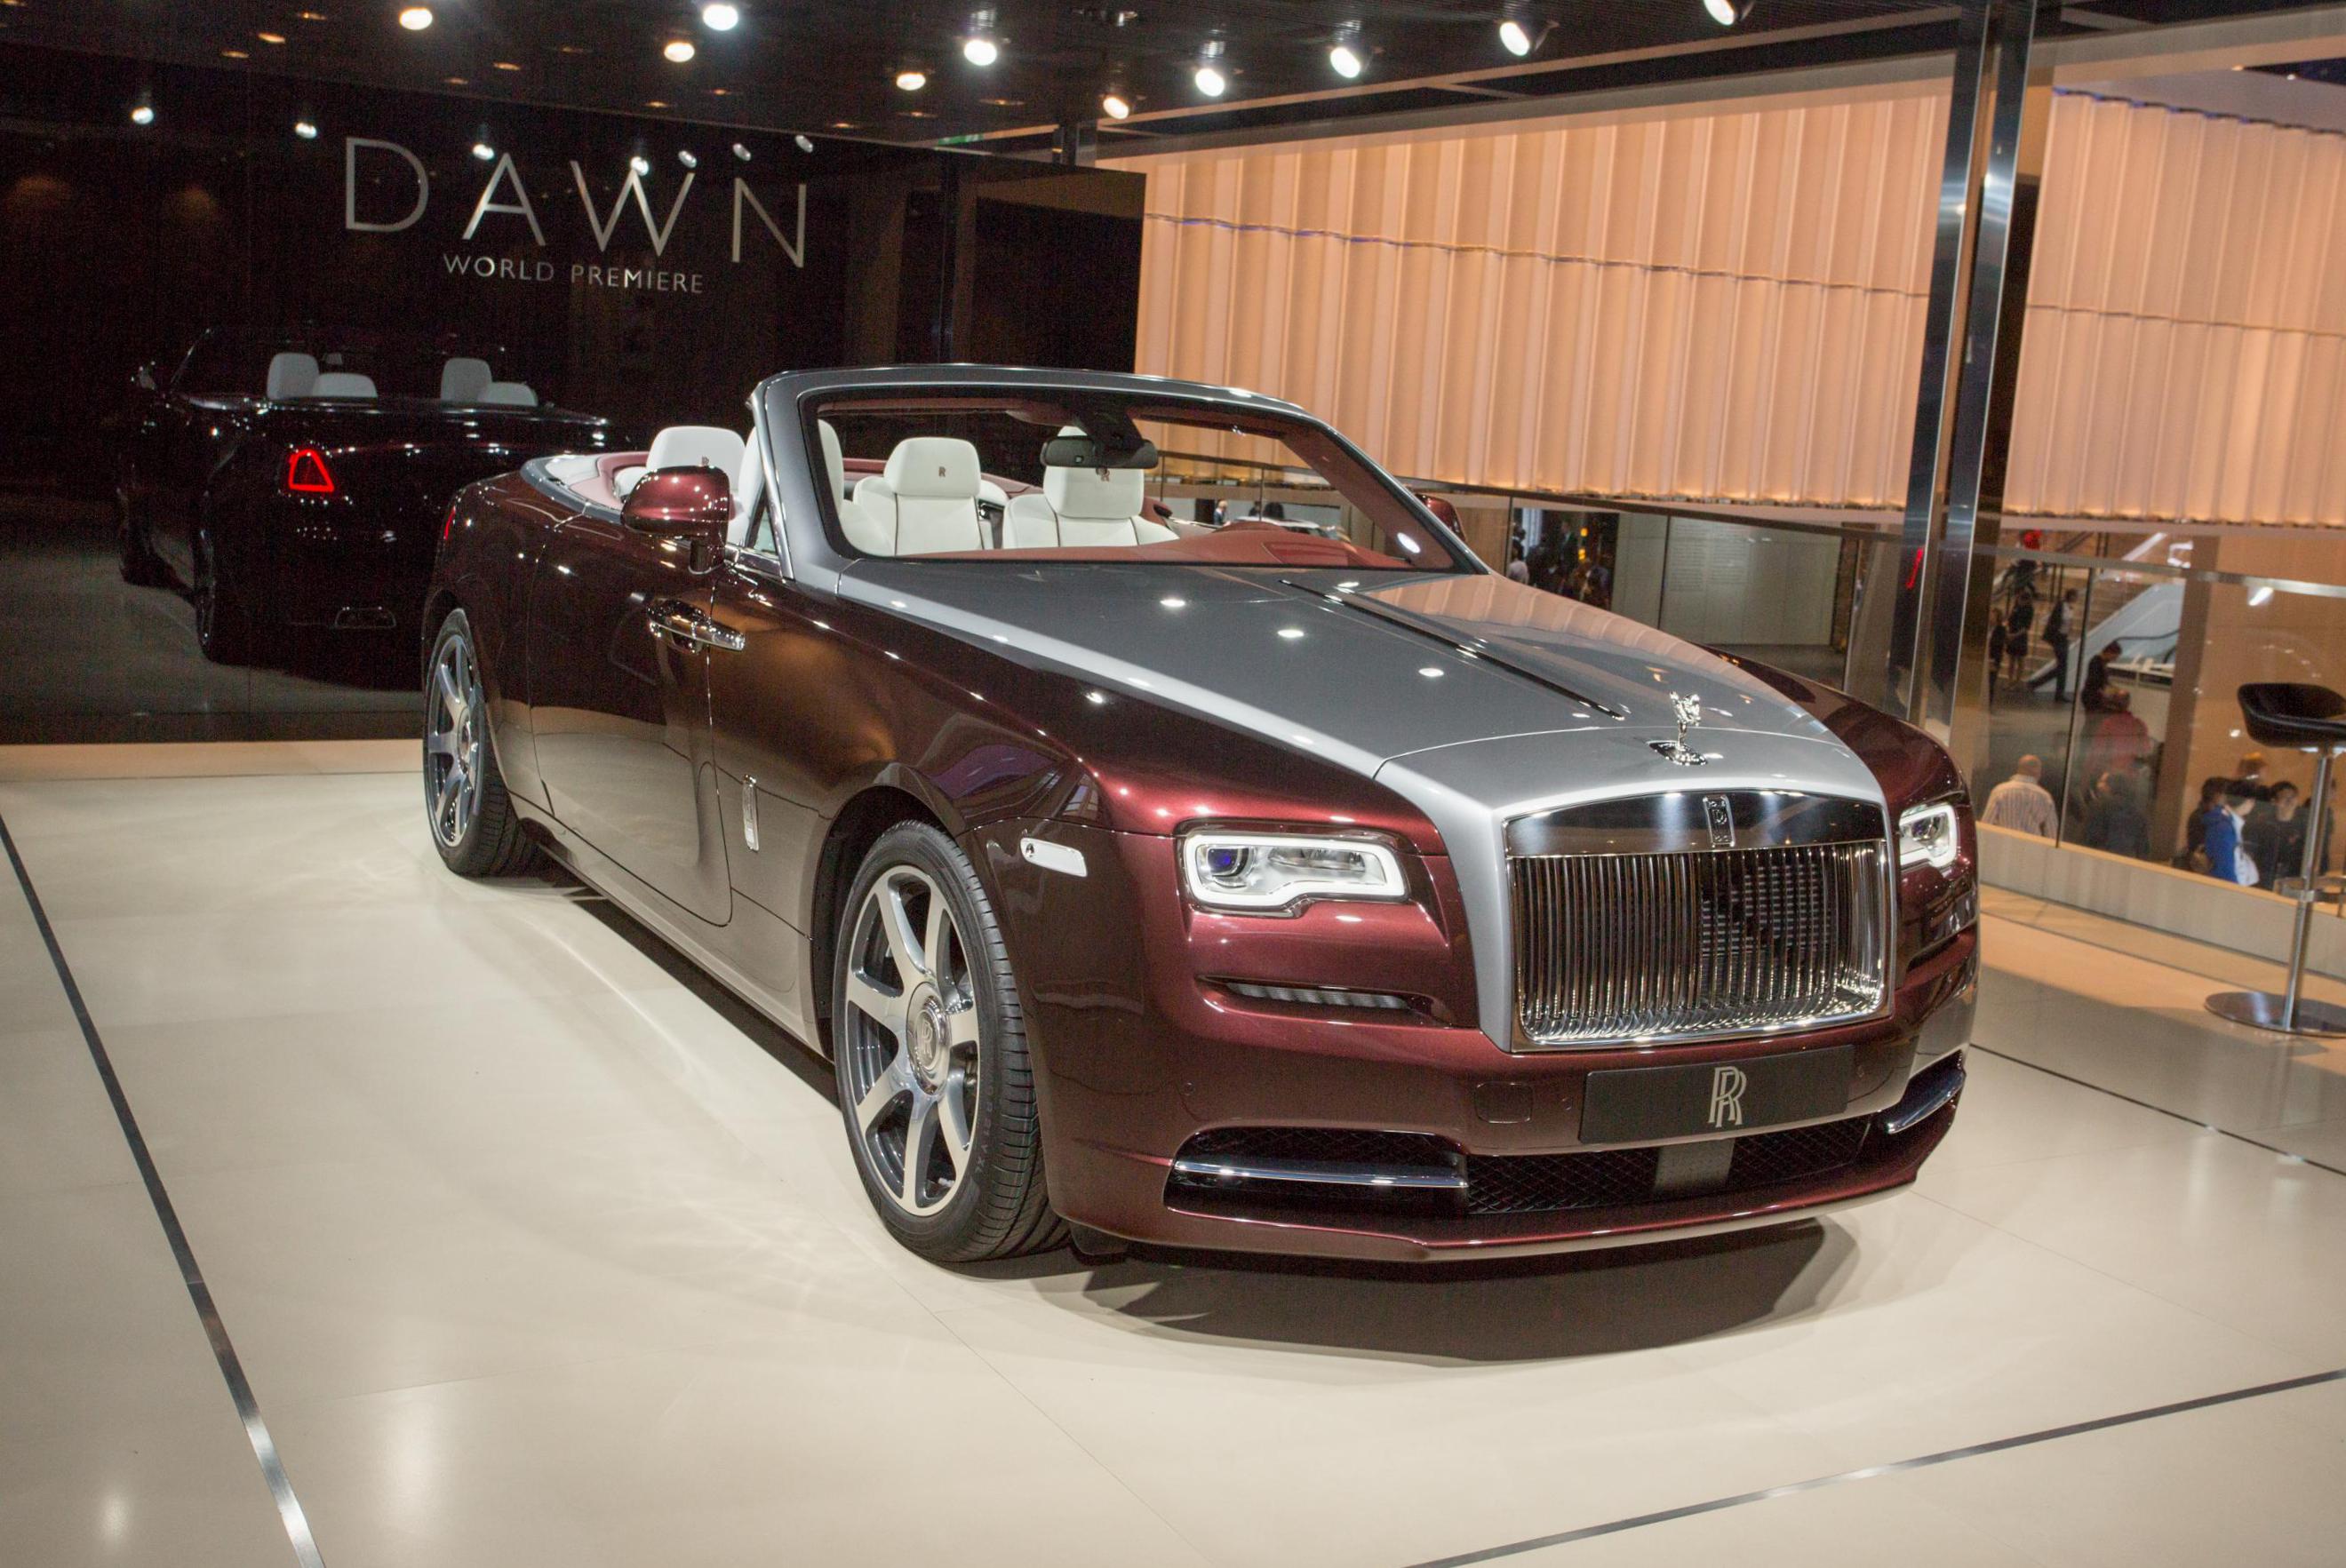 Dawn Rolls-Royce approved 2010